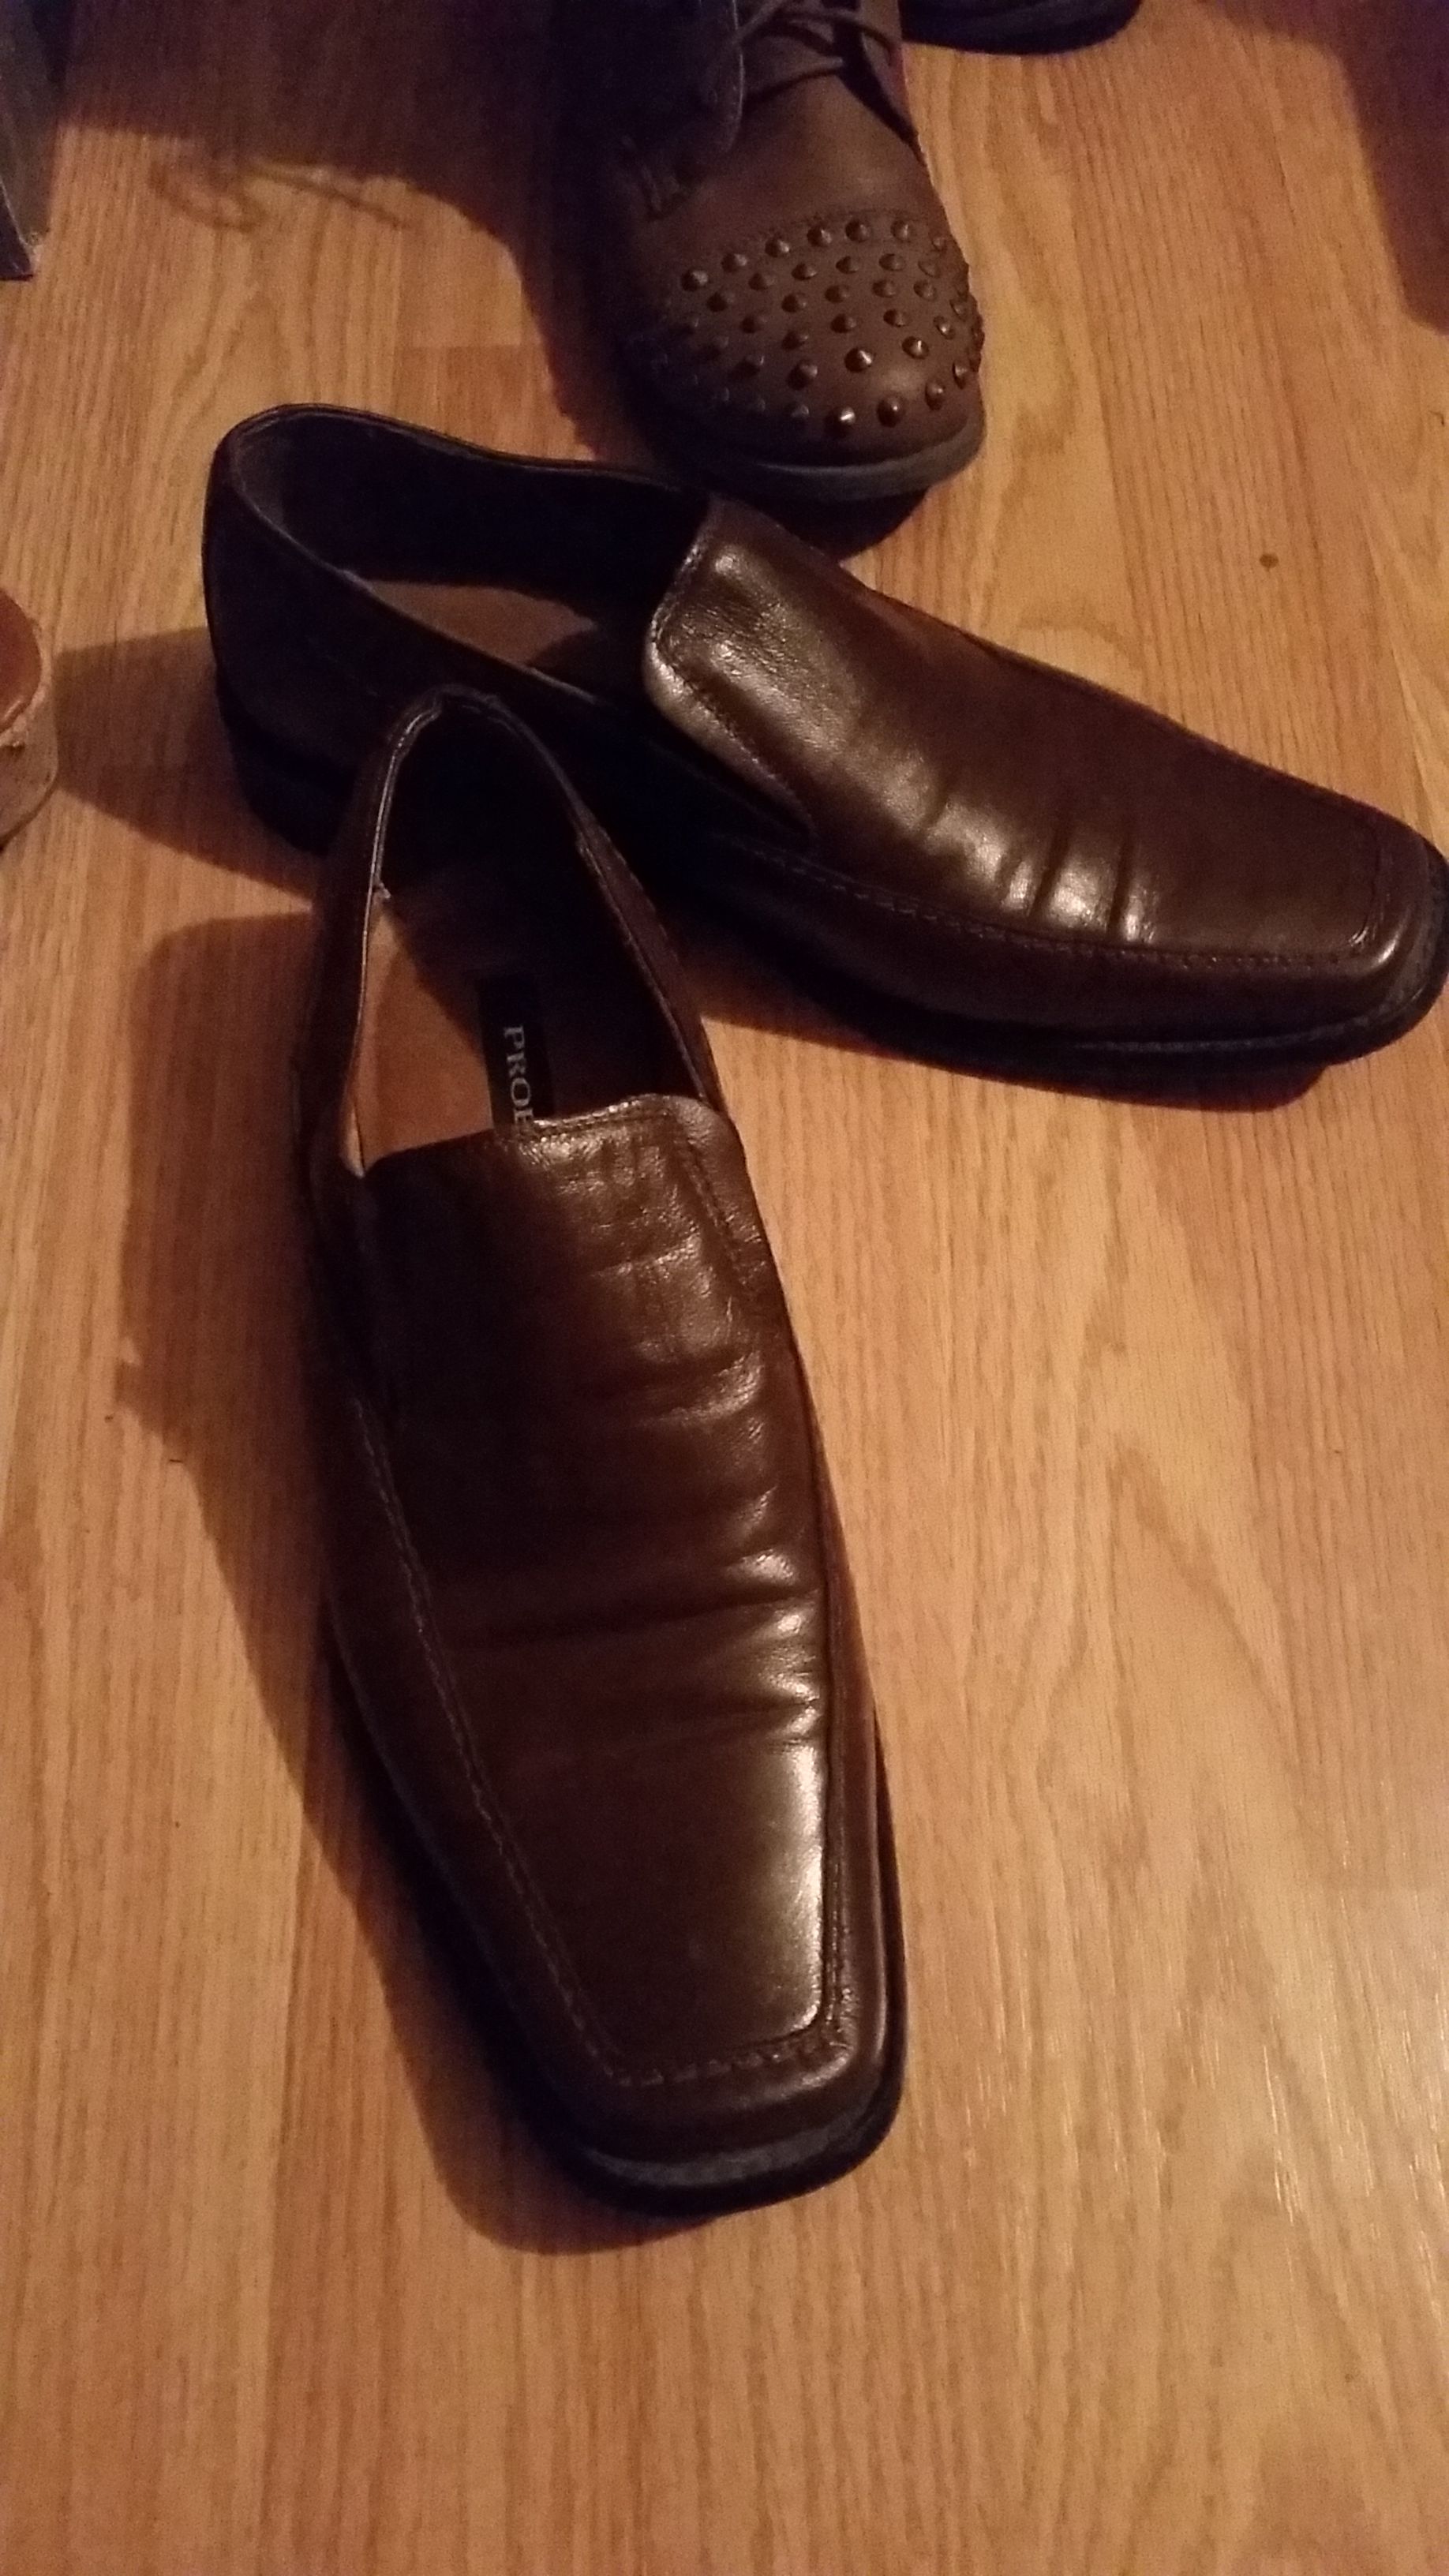 Men's leather dress shoes size 8